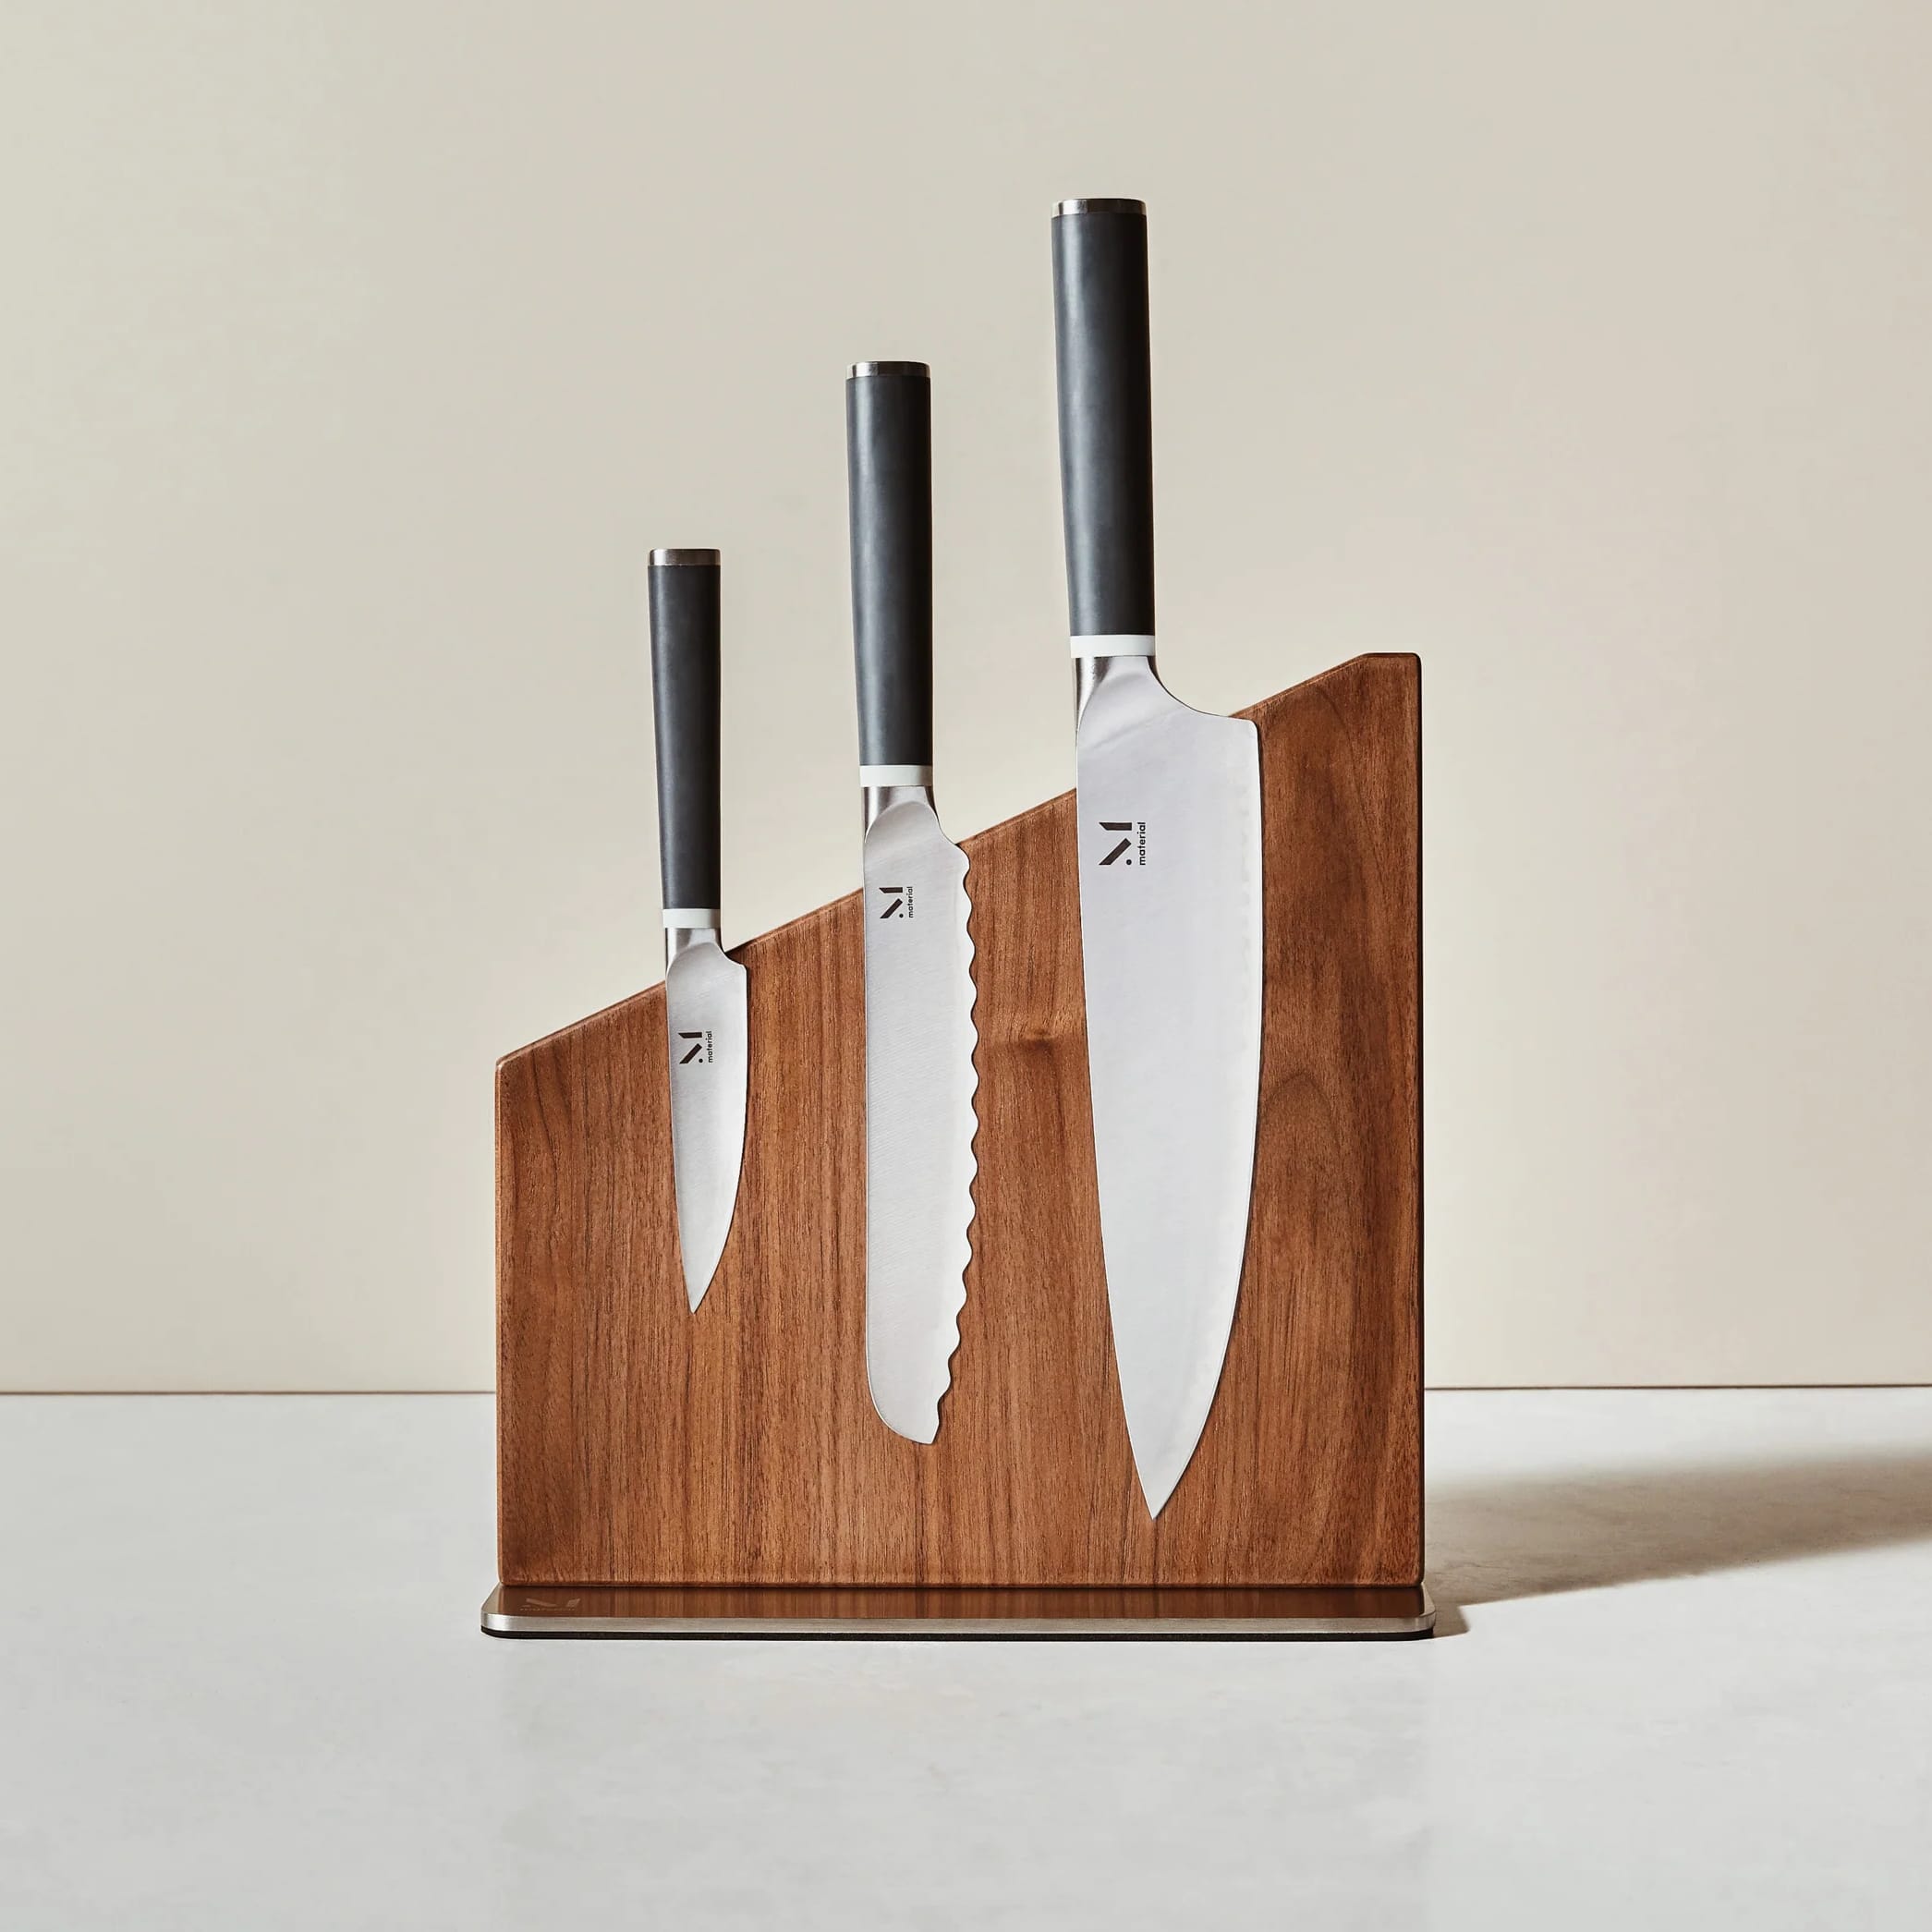 6 Sharp Kitchen Knife Storage Ideas